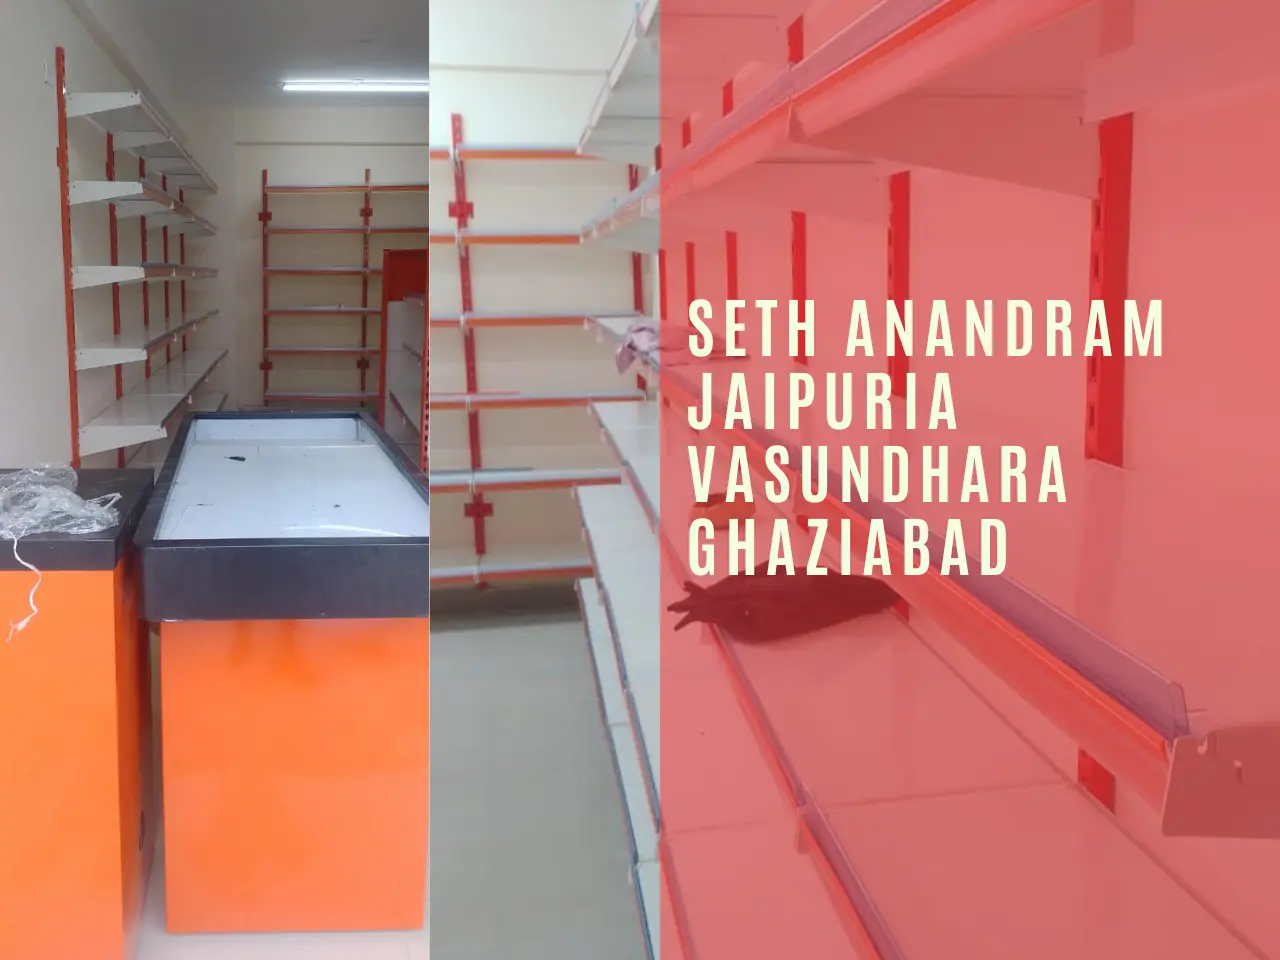 Seth Anandram Jaipuria Vasundhara Ghaziabad.webp